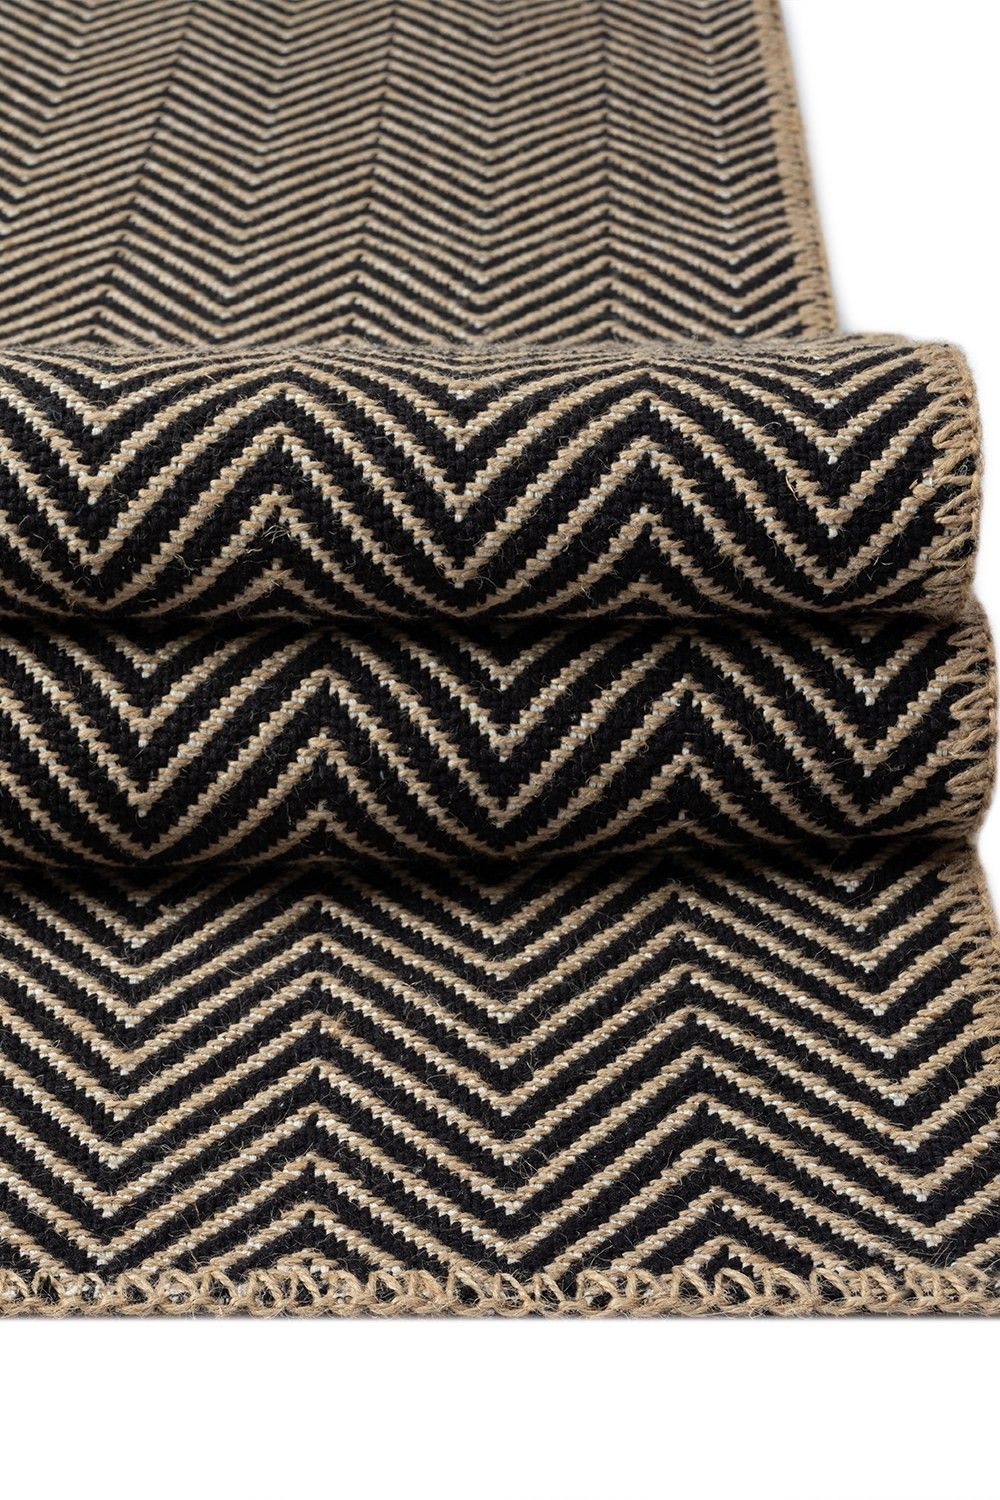 Friolero 2577 - Carpet (200 x 290)